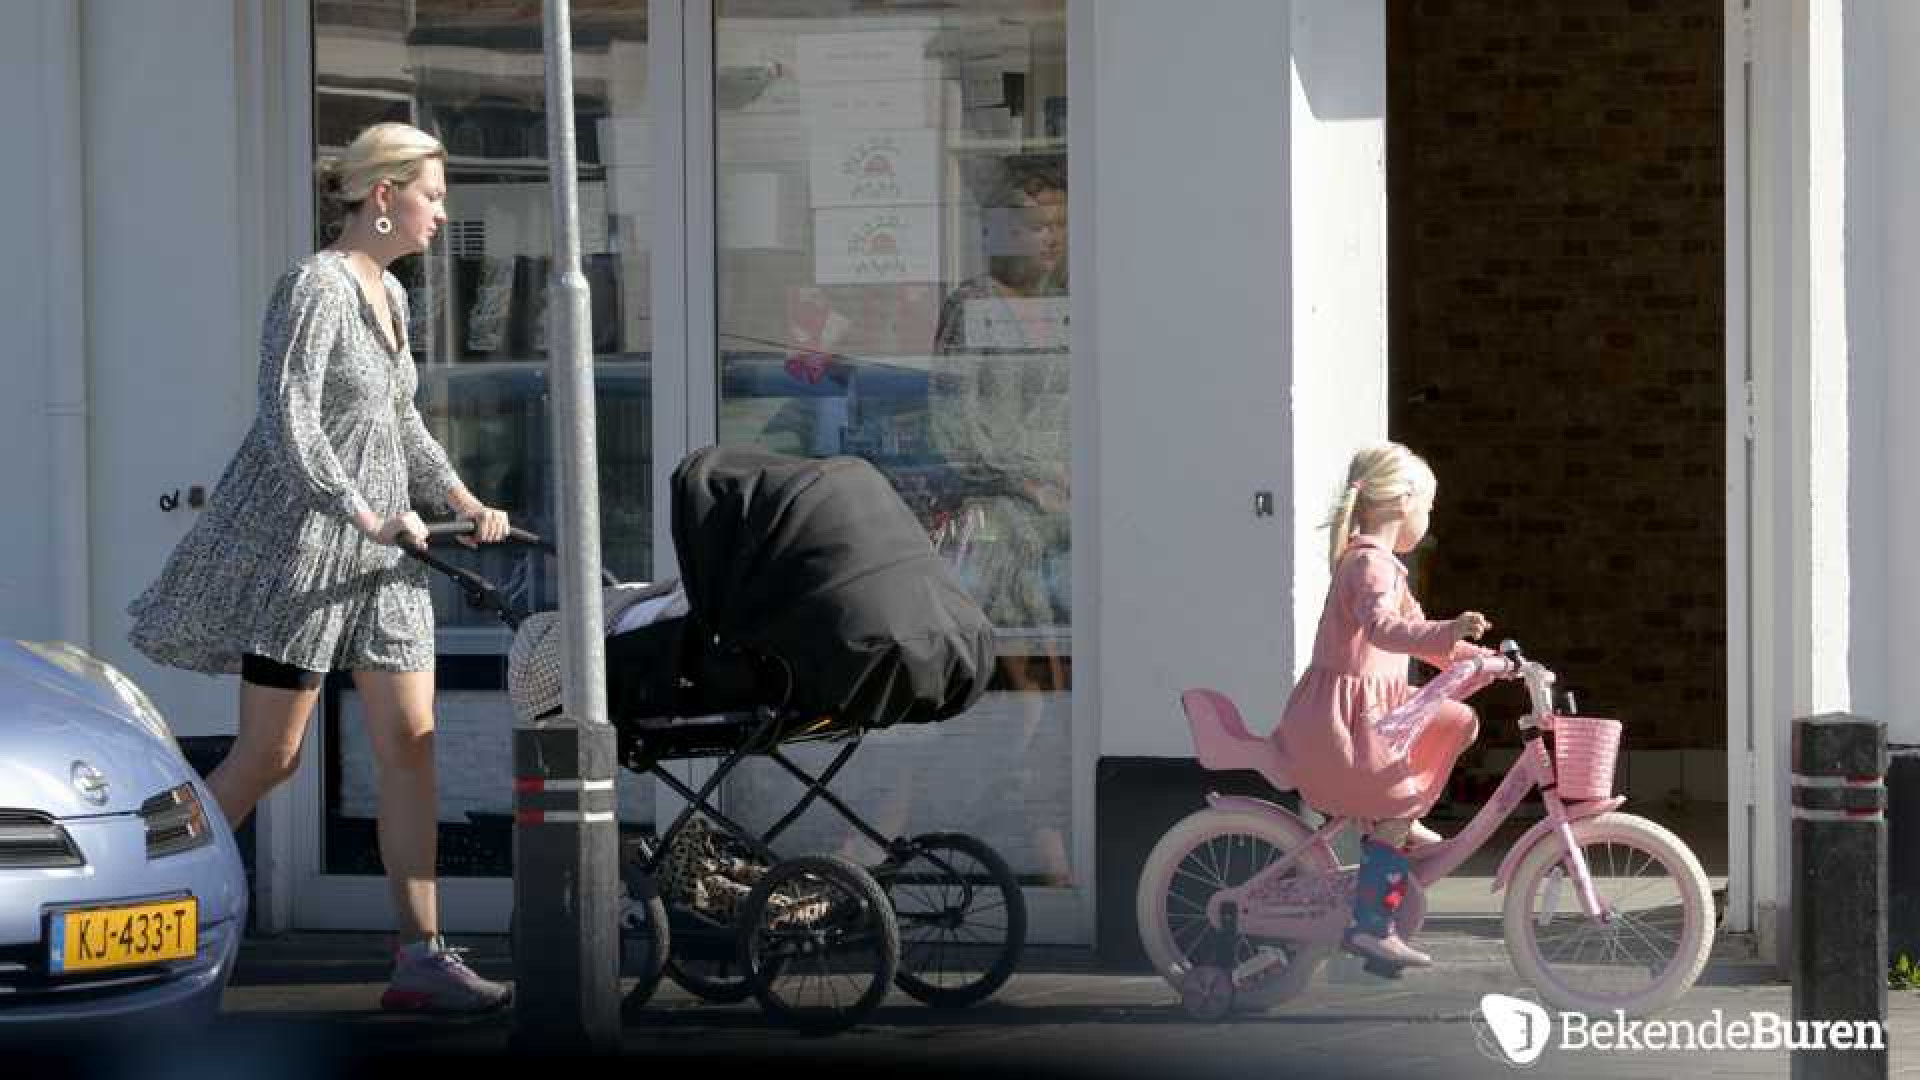 Eerste beelden Maxime Meiland wandelend met baby Vive en dochtertje Claire. Zie foto's